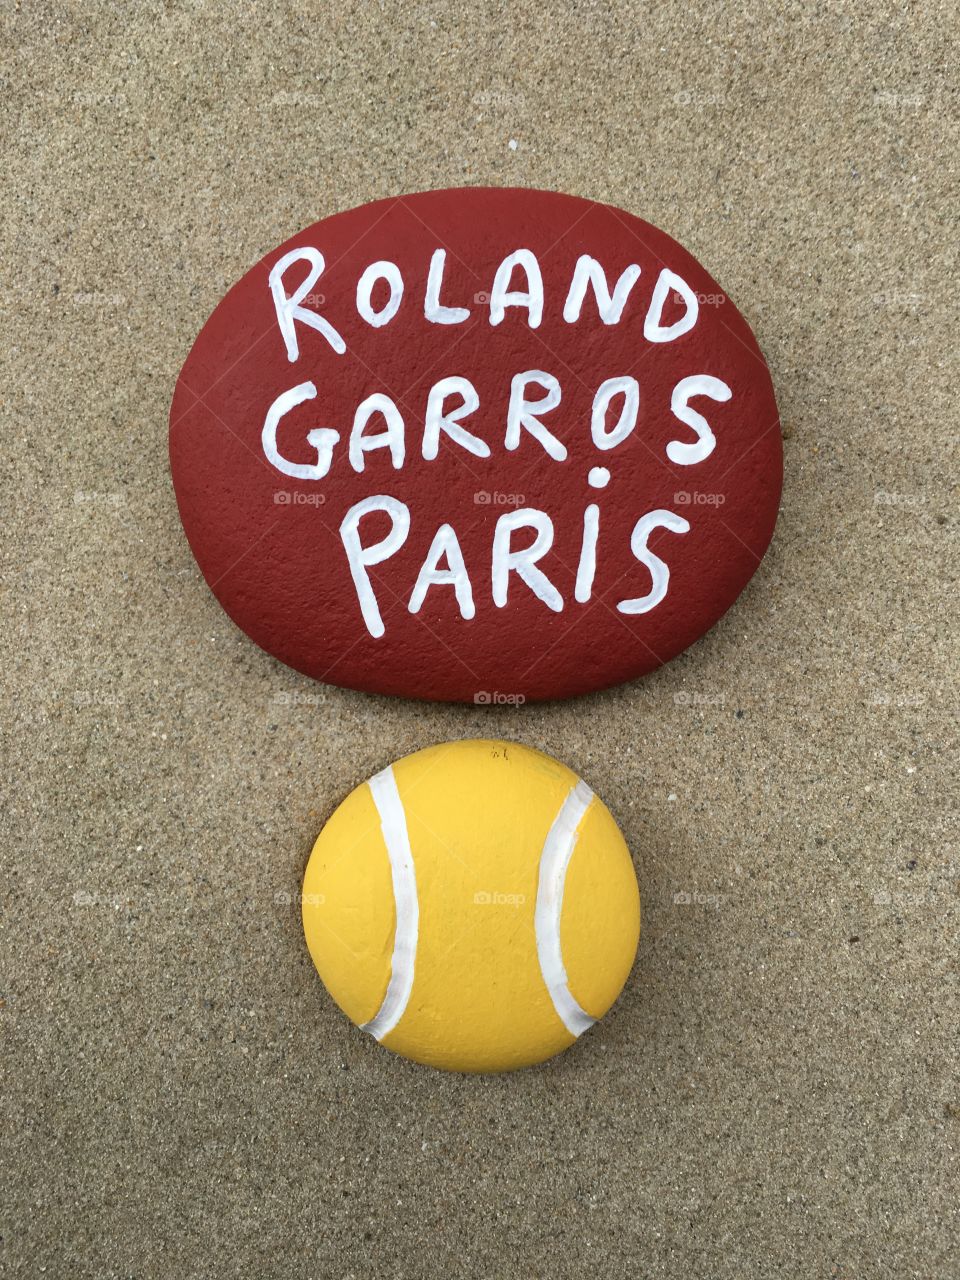 Roland Garros, Grand Slam Tournament, souvenir on stones